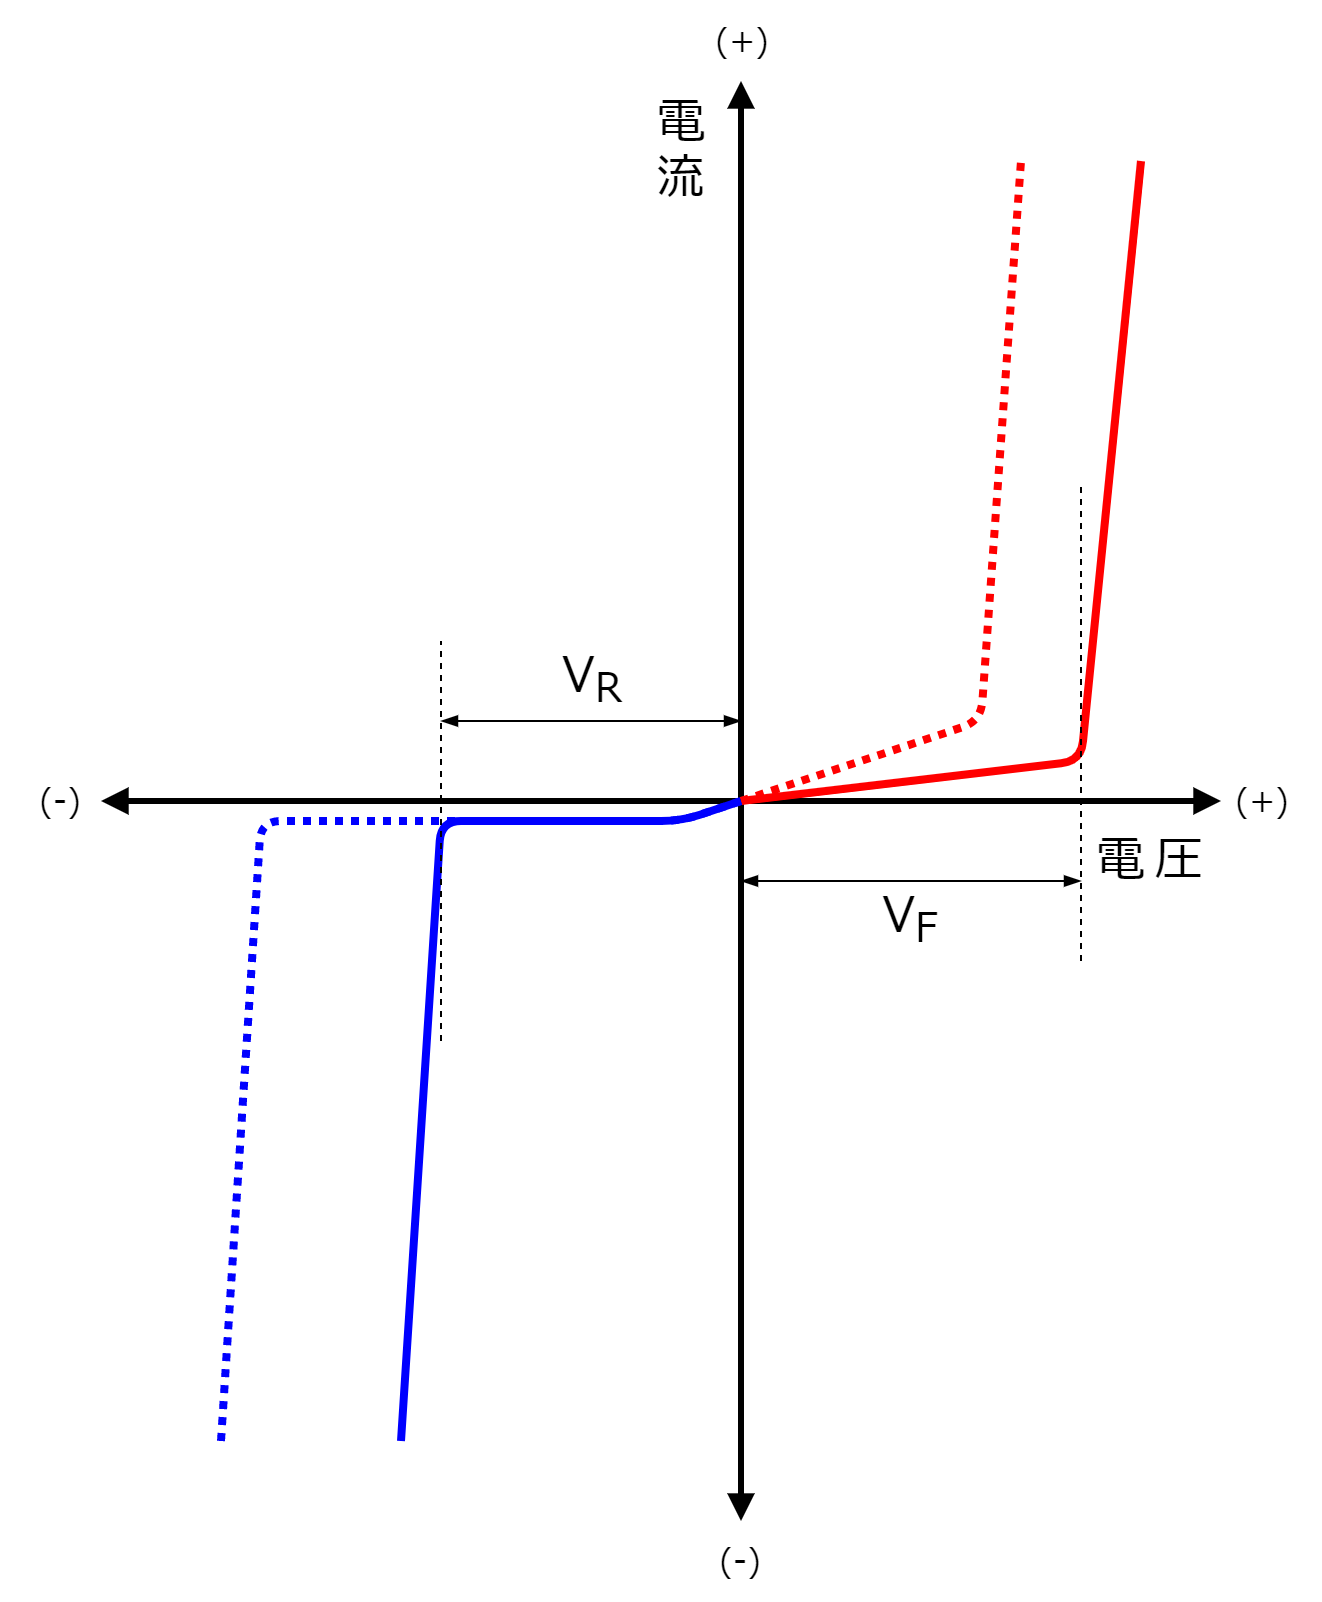 図2-4-2-1.電圧と電流の関係